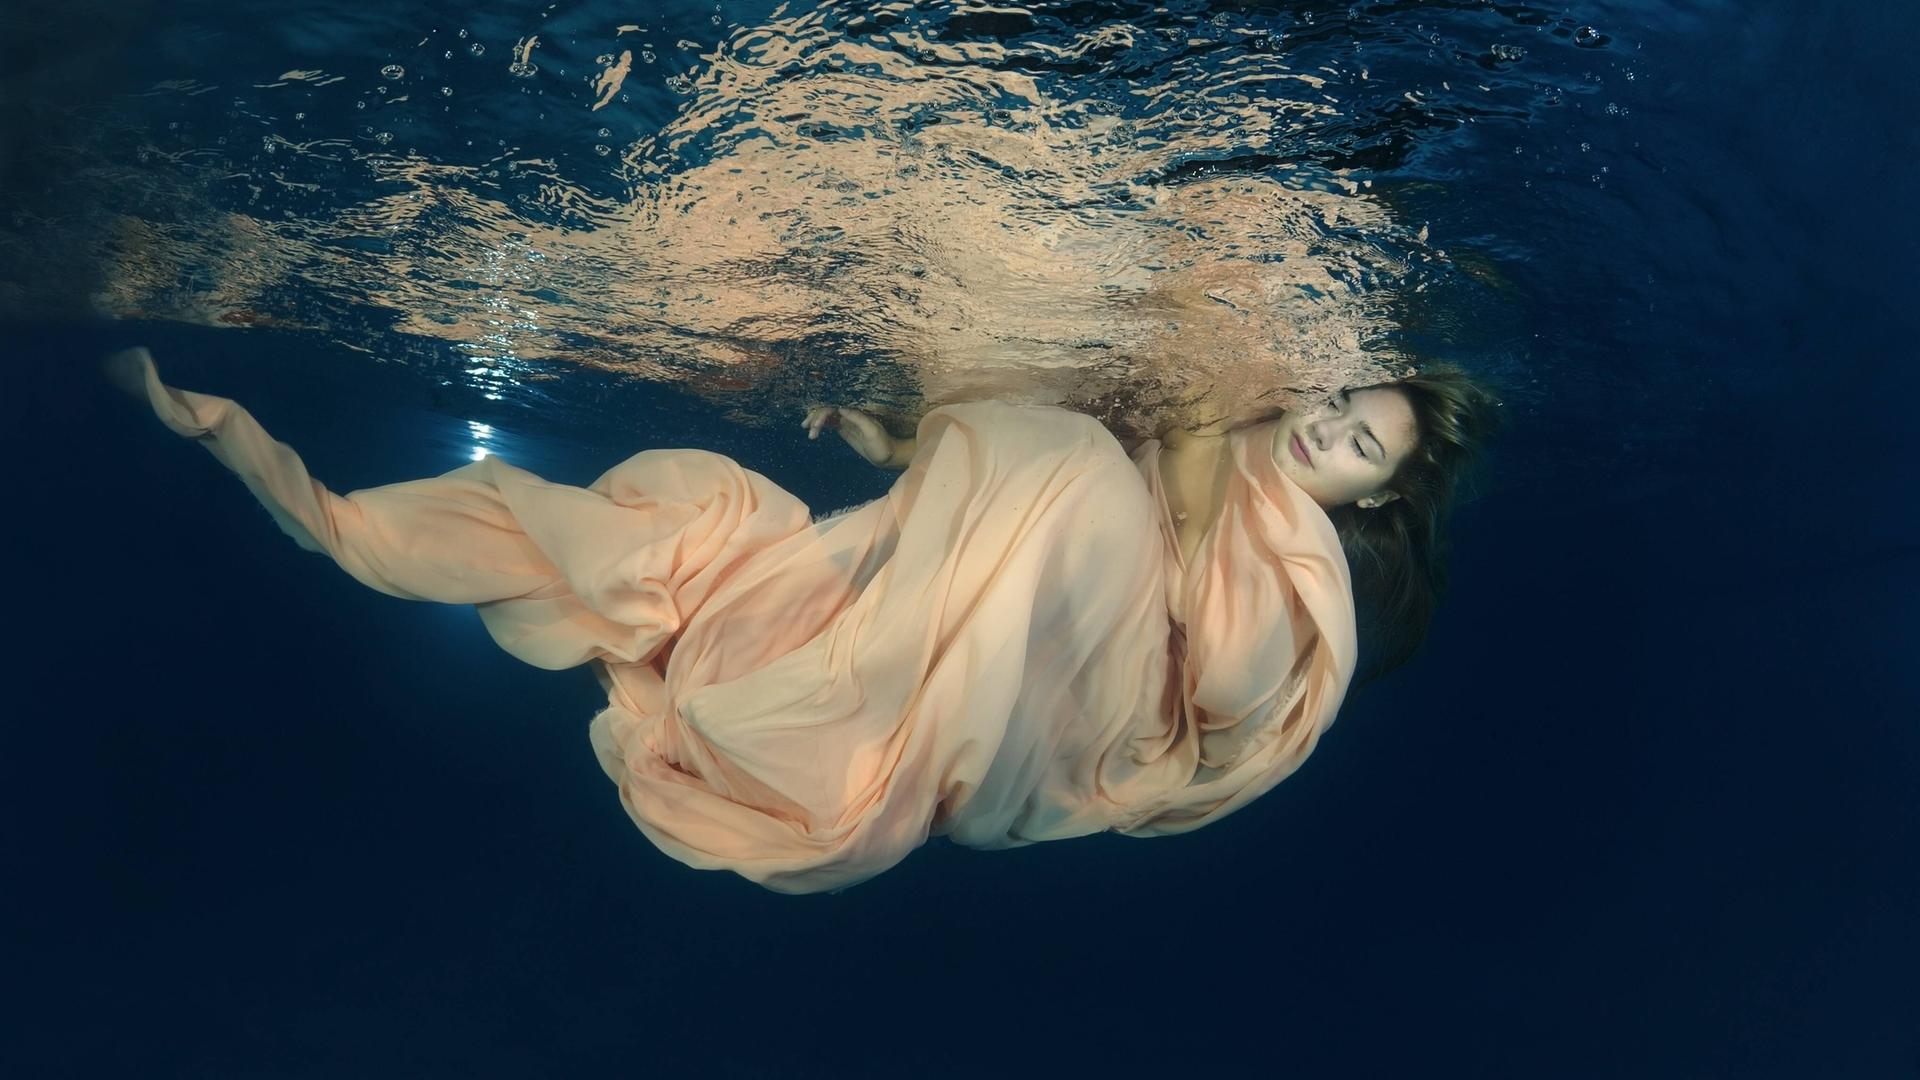 Eine Frau in einem wallenden Kleid unter der Wasseroberfläche, ihre Augen sind geschlossen